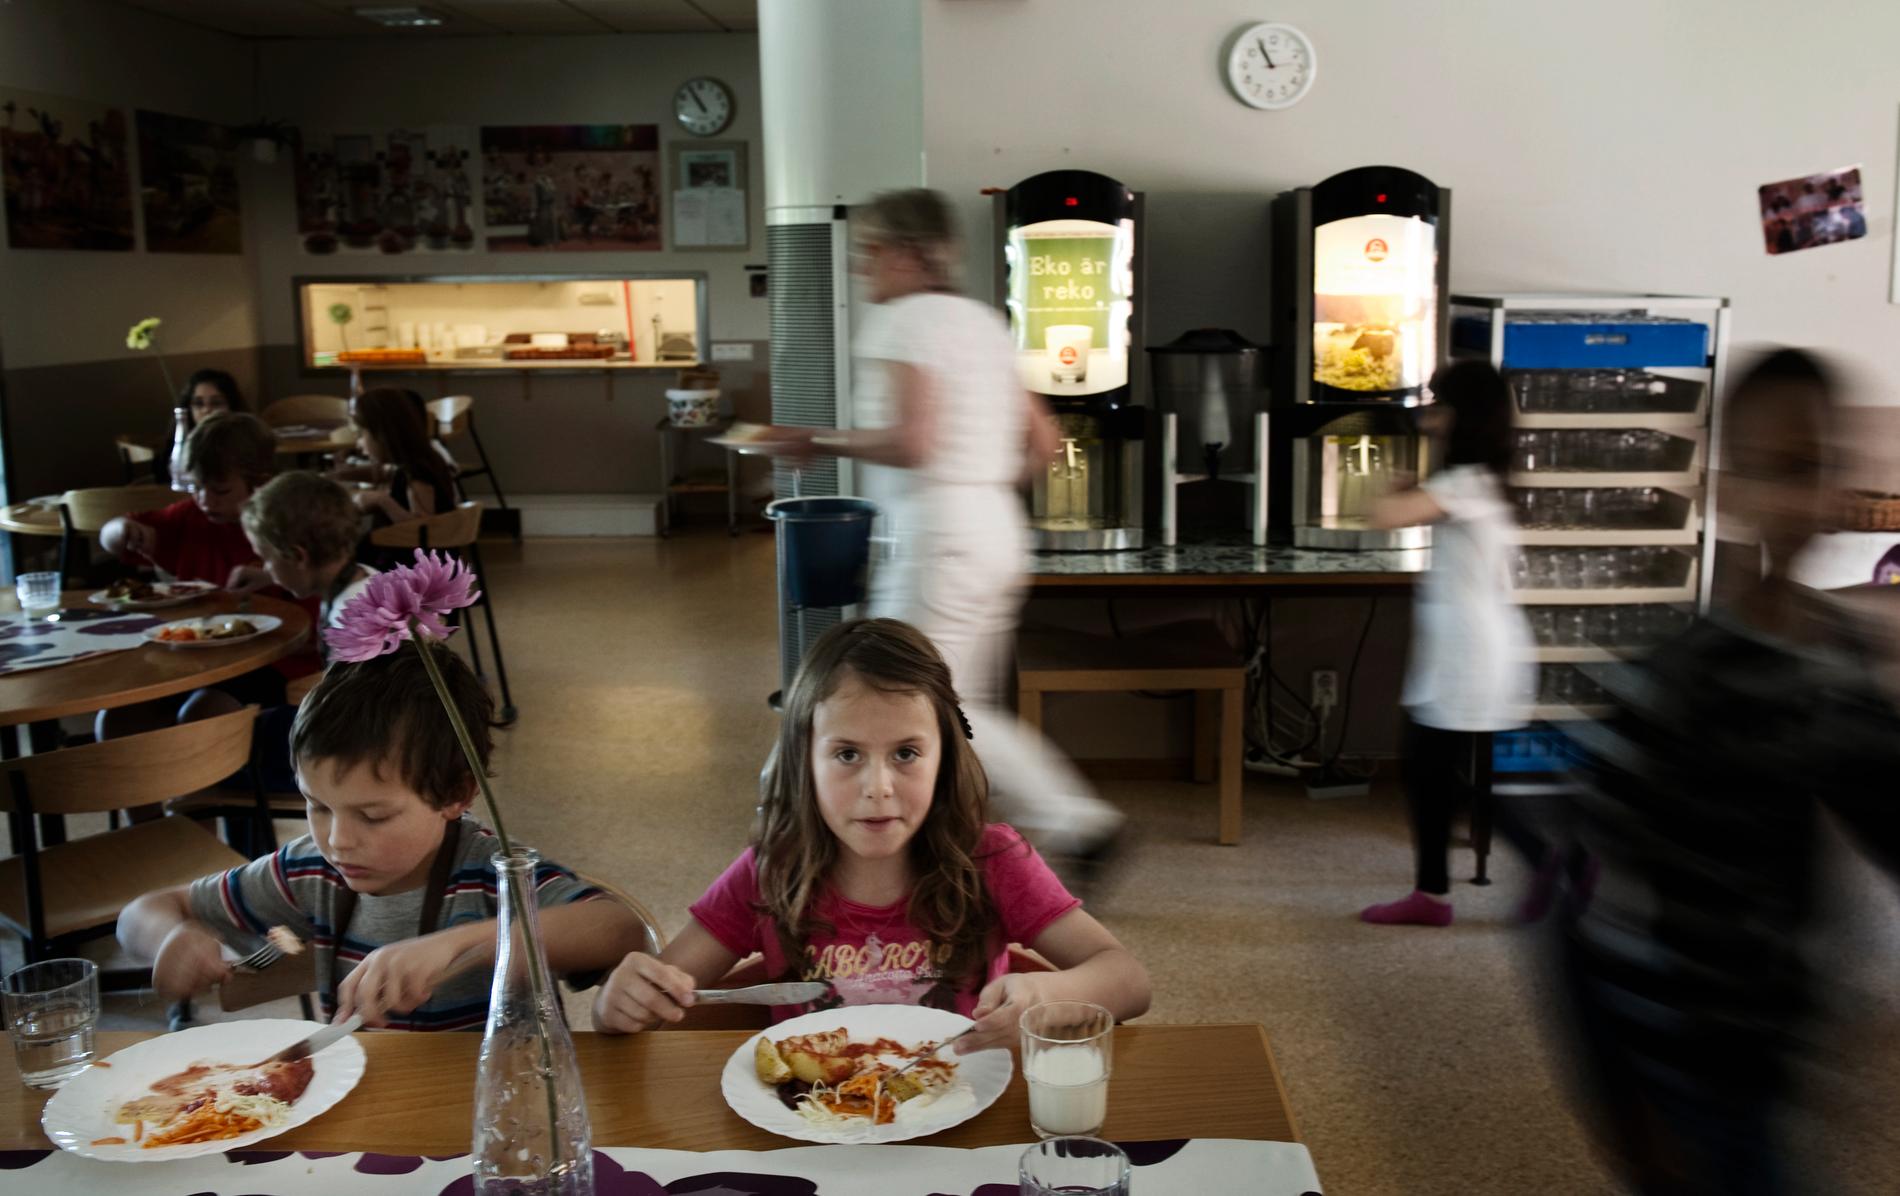 På många skolor räcker inte matsalarna längre till. Max 20 minuter får man på sig, för att alla ska hinna äta. Många elever och lärare har hört av sig och berättat om matstressen. I vissa skolor tvingas man äta i klassrum och korridorer.